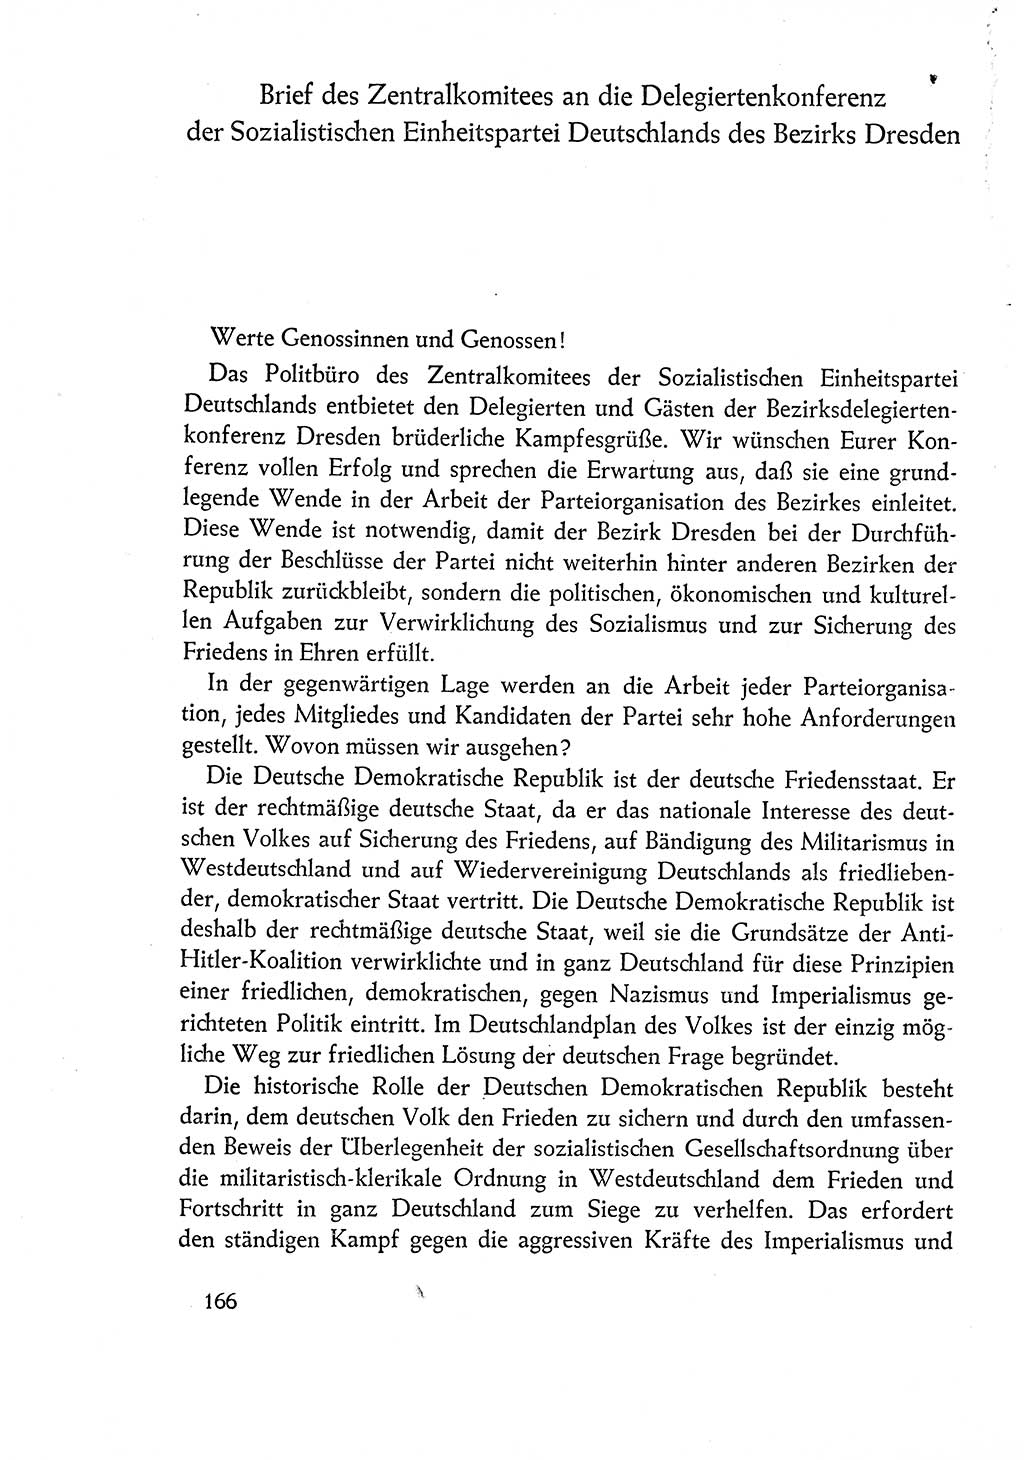 Dokumente der Sozialistischen Einheitspartei Deutschlands (SED) [Deutsche Demokratische Republik (DDR)] 1960-1961, Seite 166 (Dok. SED DDR 1960-1961, S. 166)